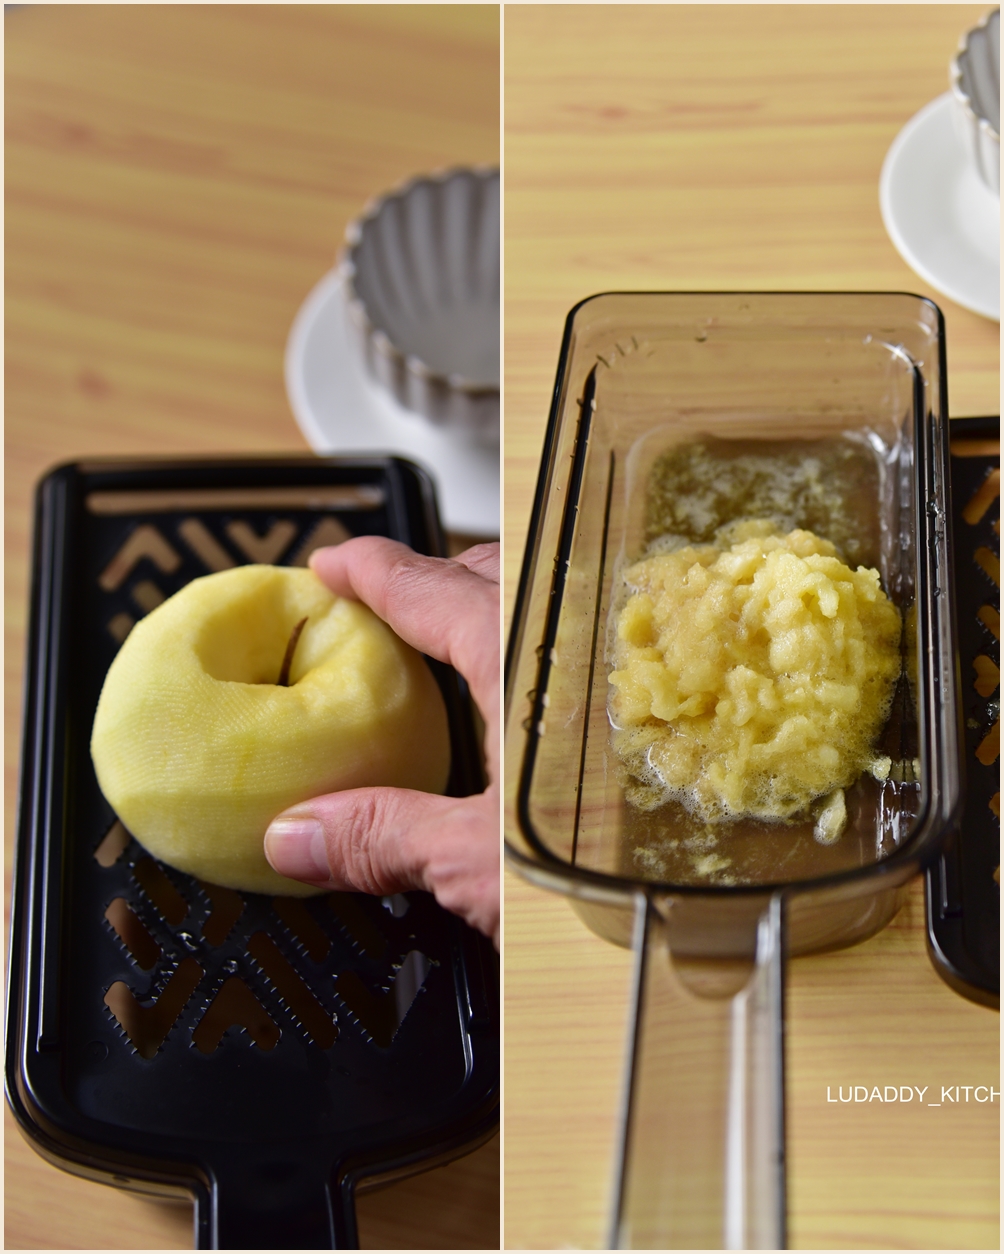 【貝印關孫六調理器】日本製的廚房選物‧切片磨泥刨絲‧做料理方便又快速